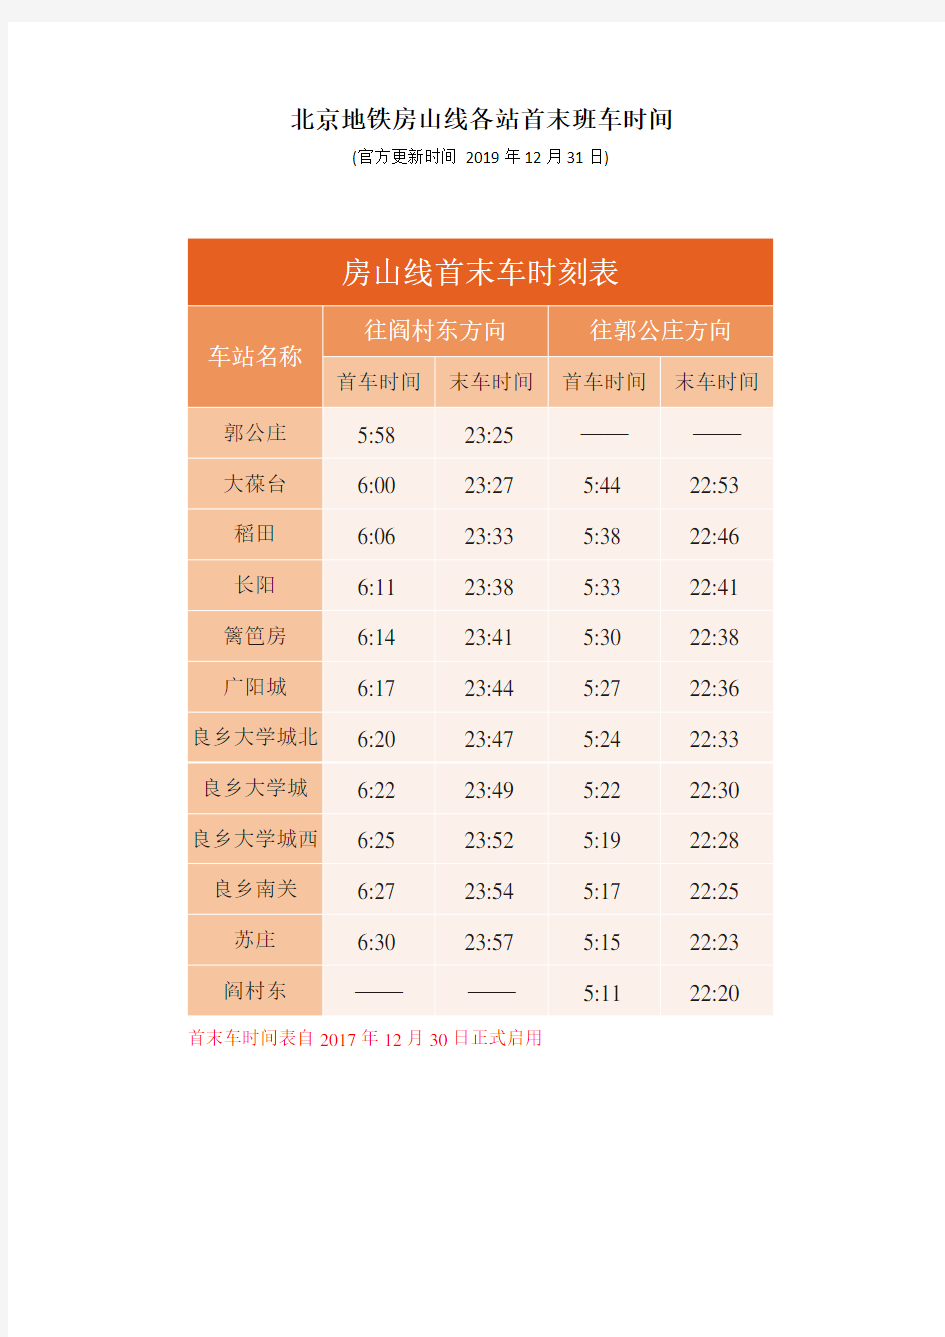 北京地铁房山线各站首末班车时间(官方更新时间 2019年12月31日)